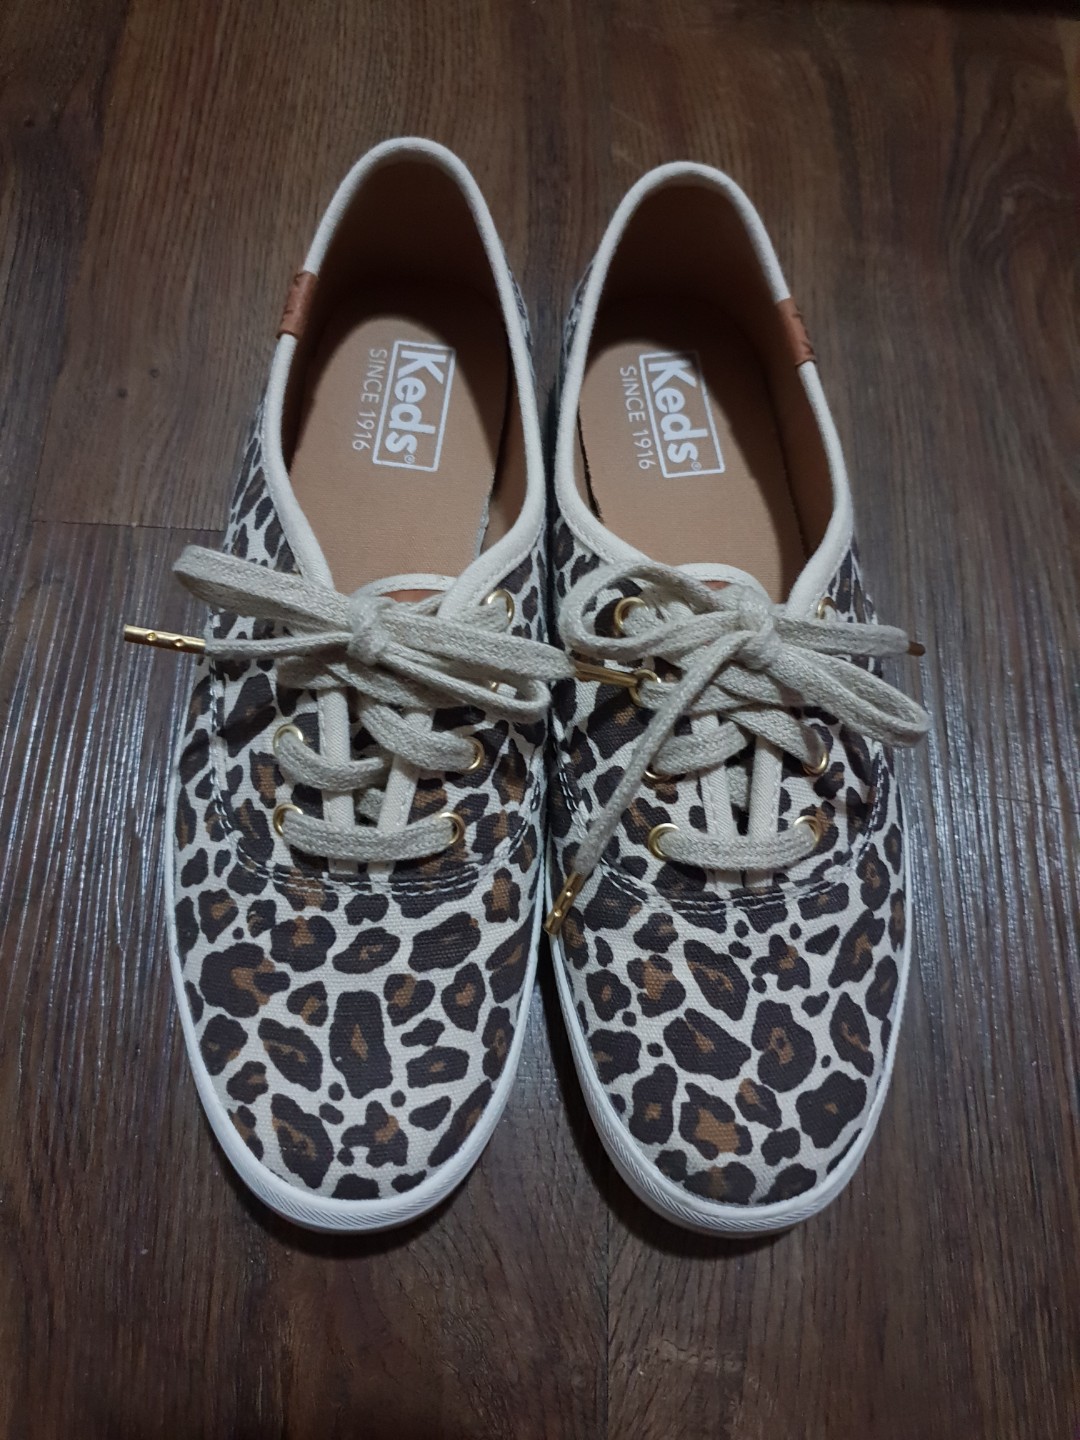 keds leopard print shoes